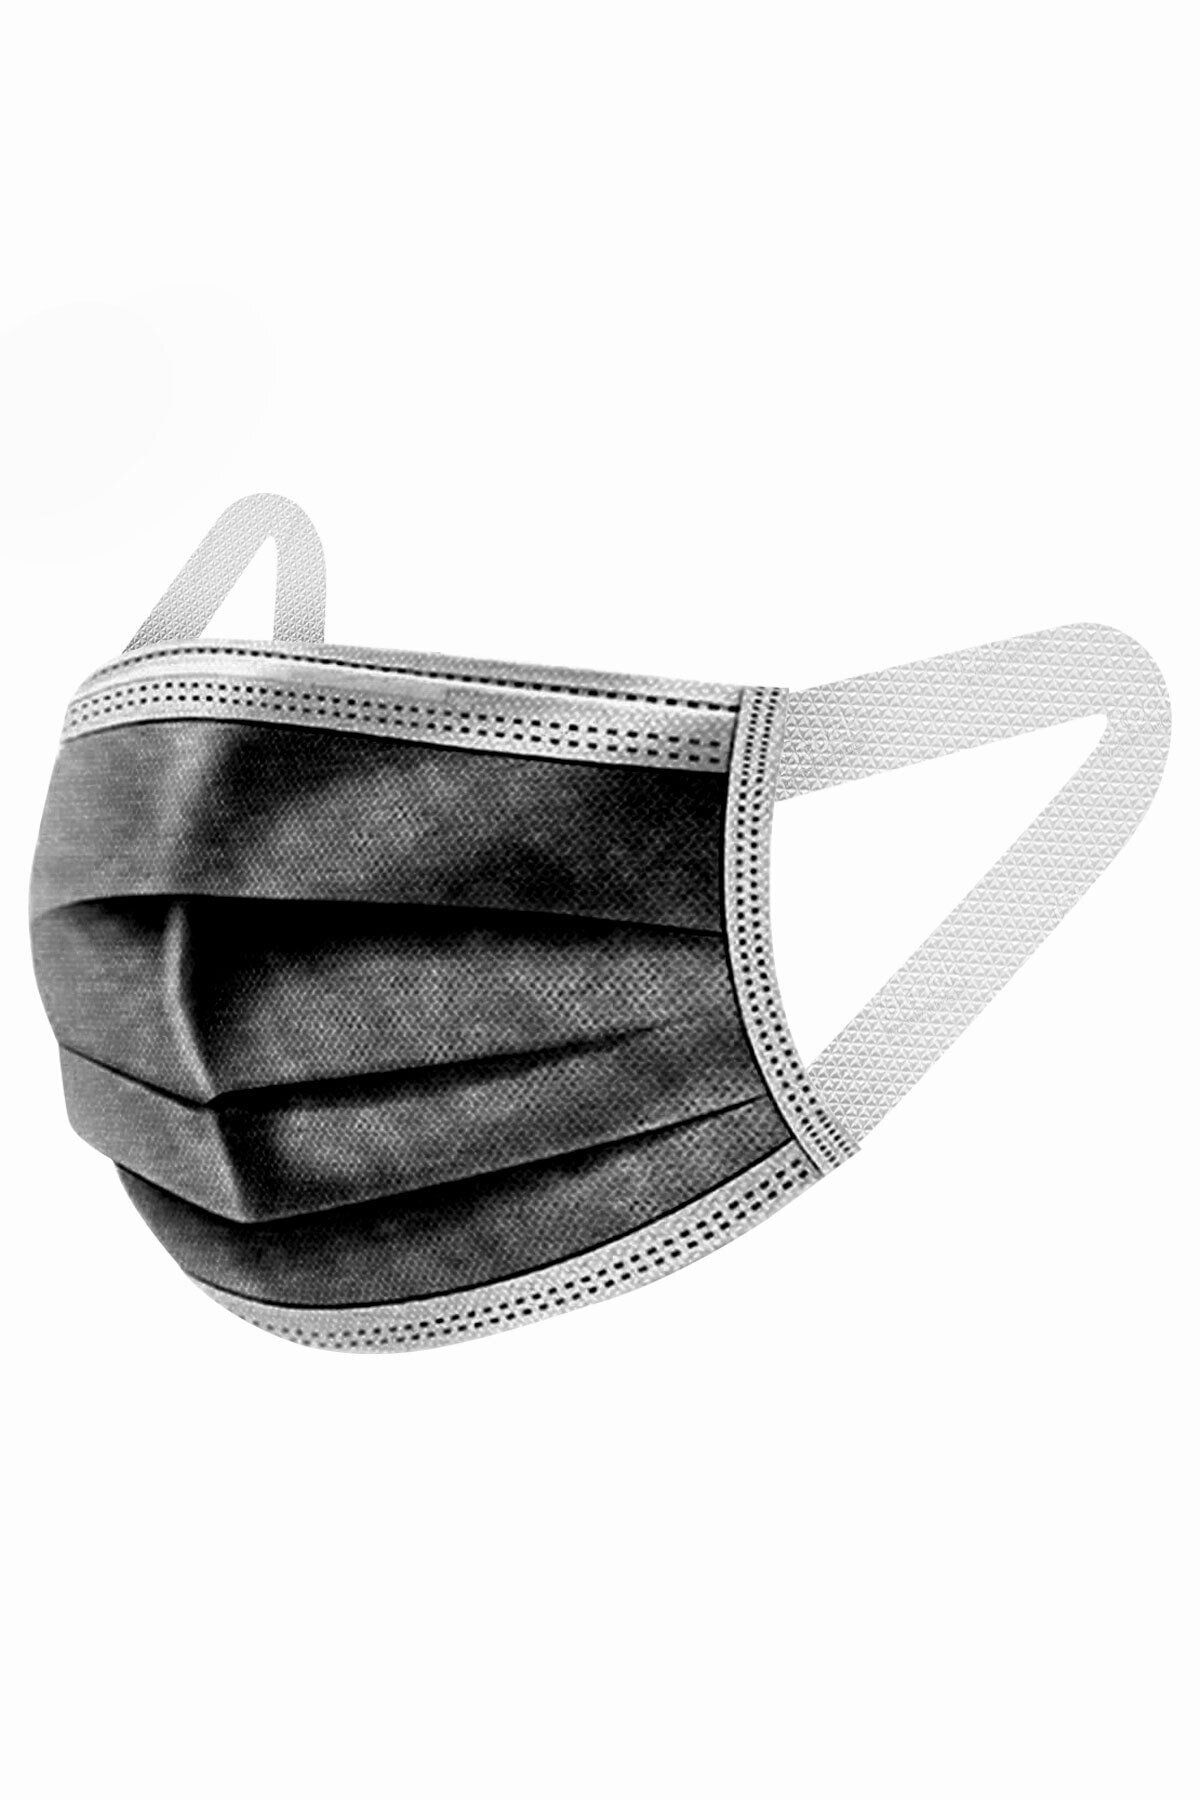 Zigavus - Yeni Nesil Siyah Renk 50 Adet Acıtmayan Kulaklıklı Maske